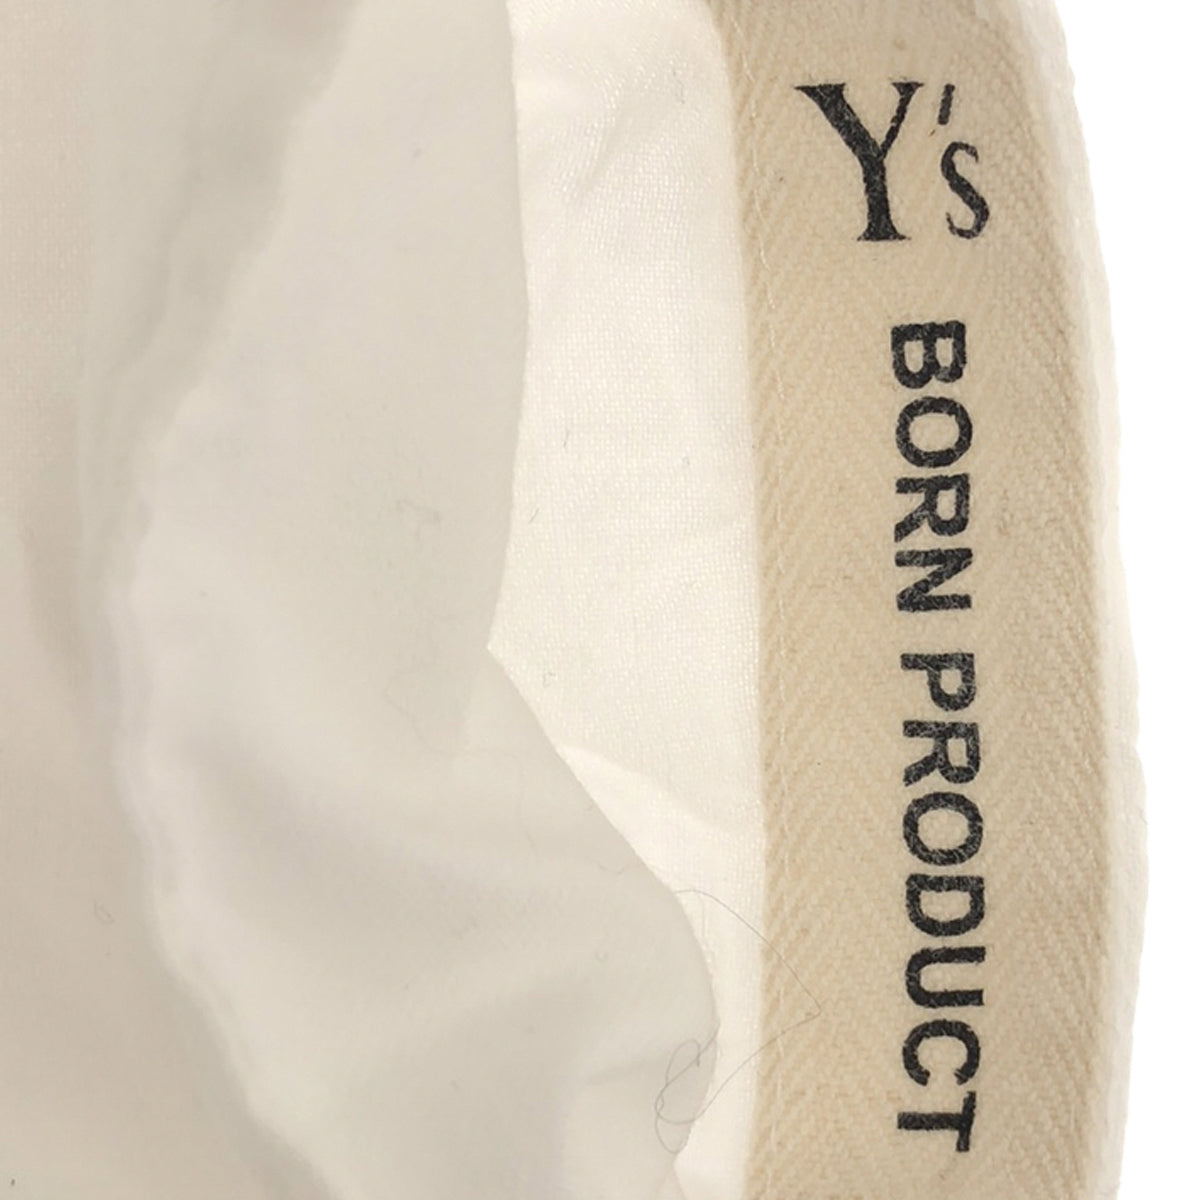 Y's / ワイズヨウジヤマモト | BORN PRODUCT / コットン ビッグシルエット シャツ ブラウス | 2 | ホワイト | レディース